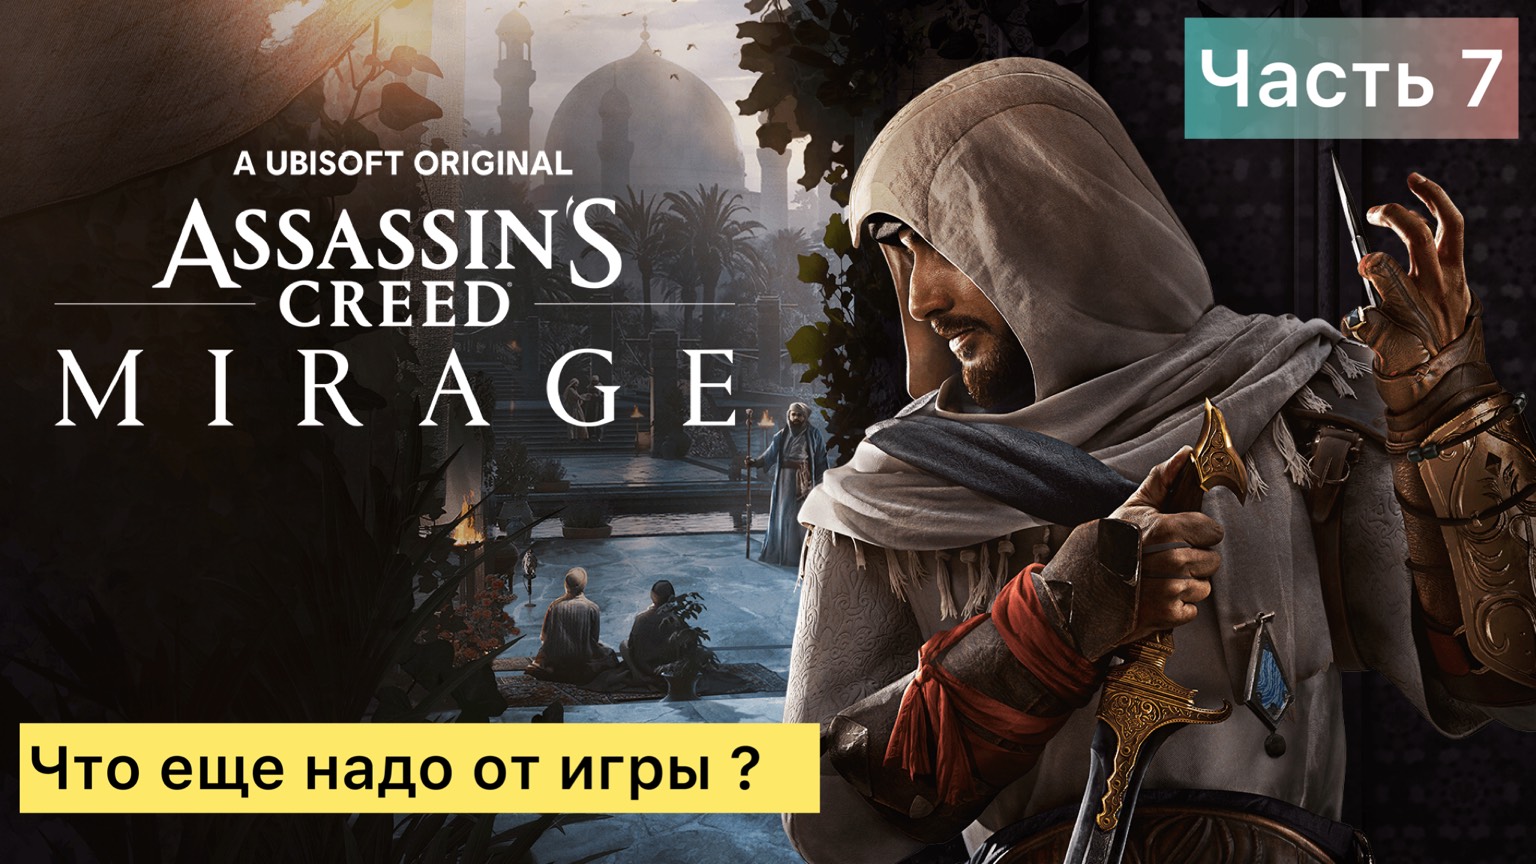 Прохождение: Assassin’s Creed Mirage "За что игру хейтят?"  - 7 часть